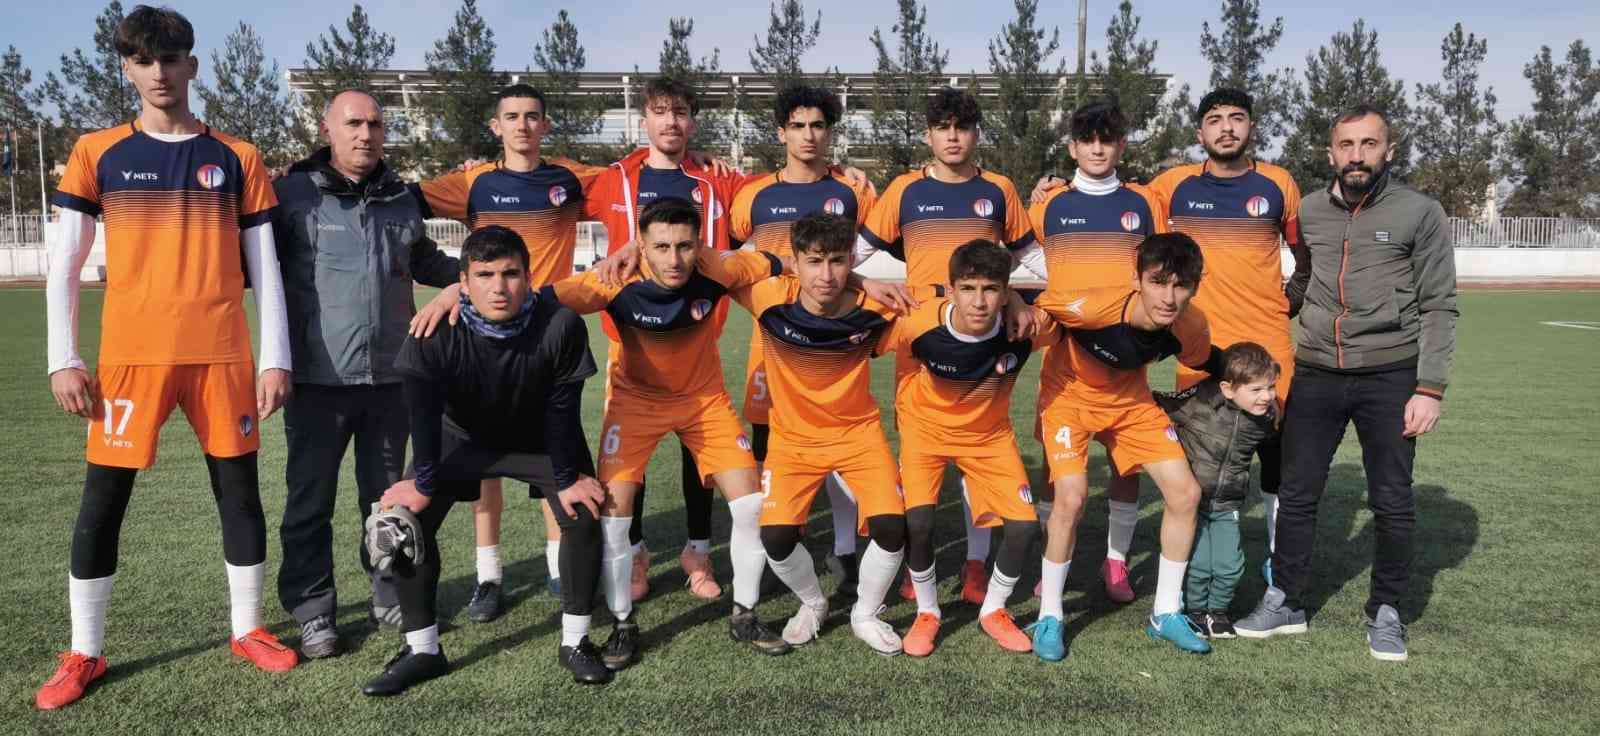 Diyarbakır’da okullararası futbol turnuvasının şampiyonu Talaytepe oldu #diyarbakir